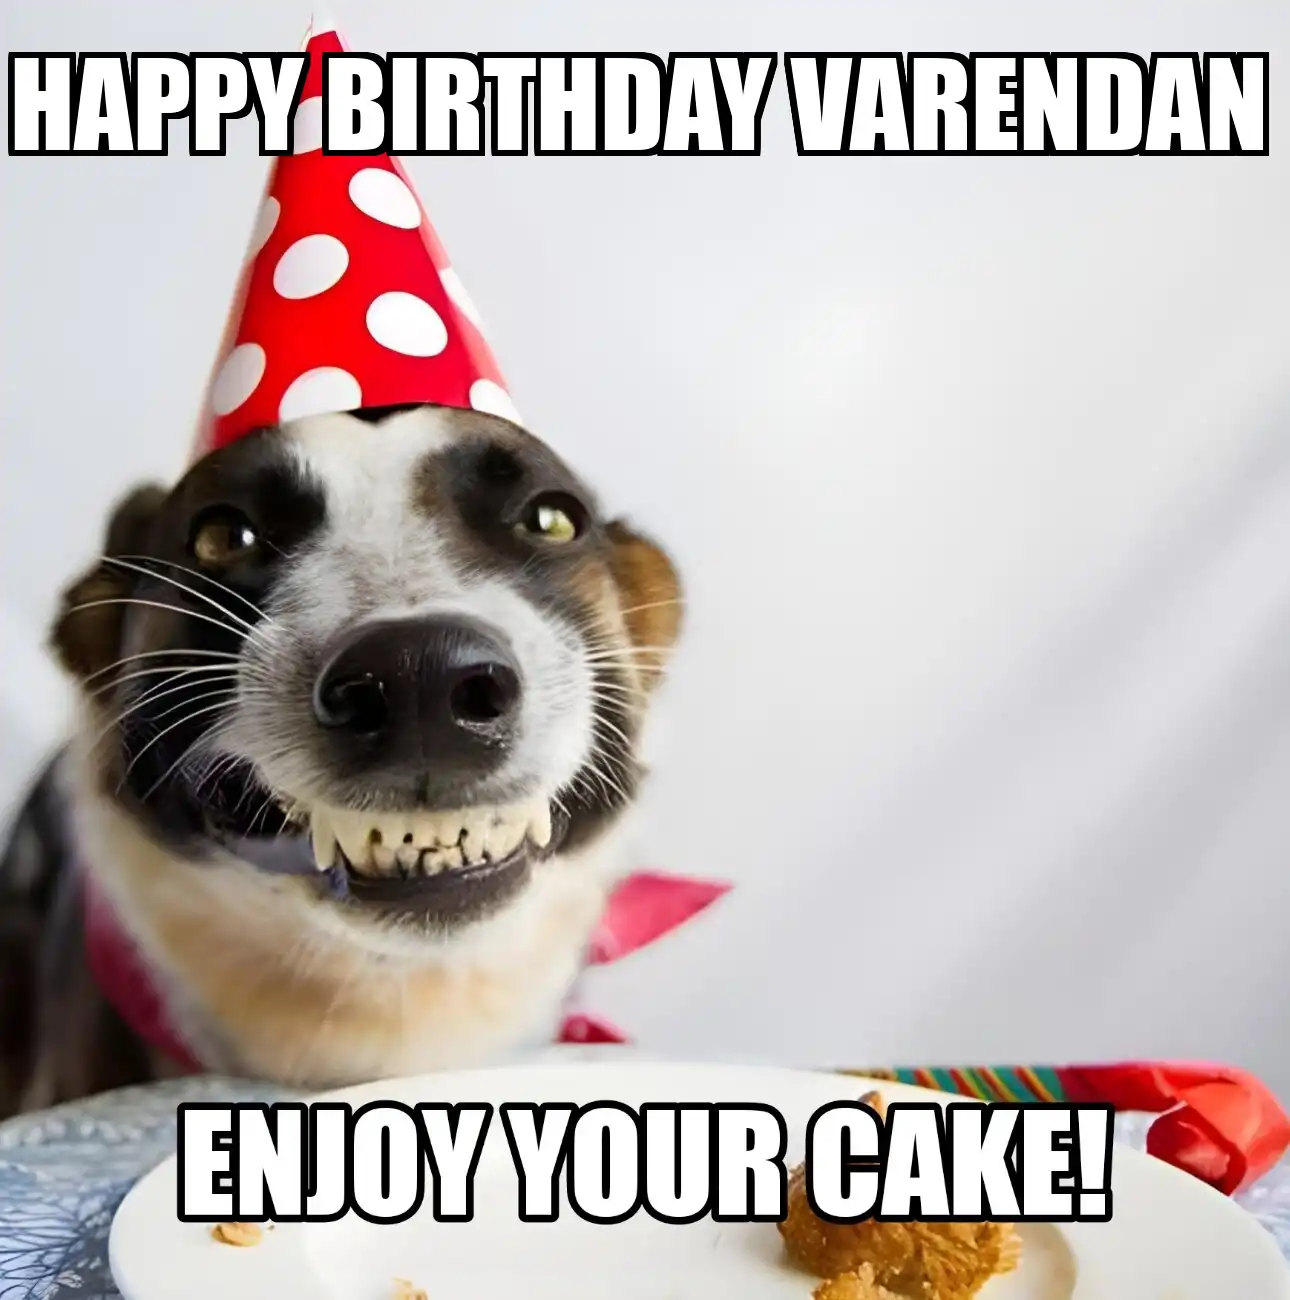 Happy Birthday Varendan Enjoy Your Cake Dog Meme